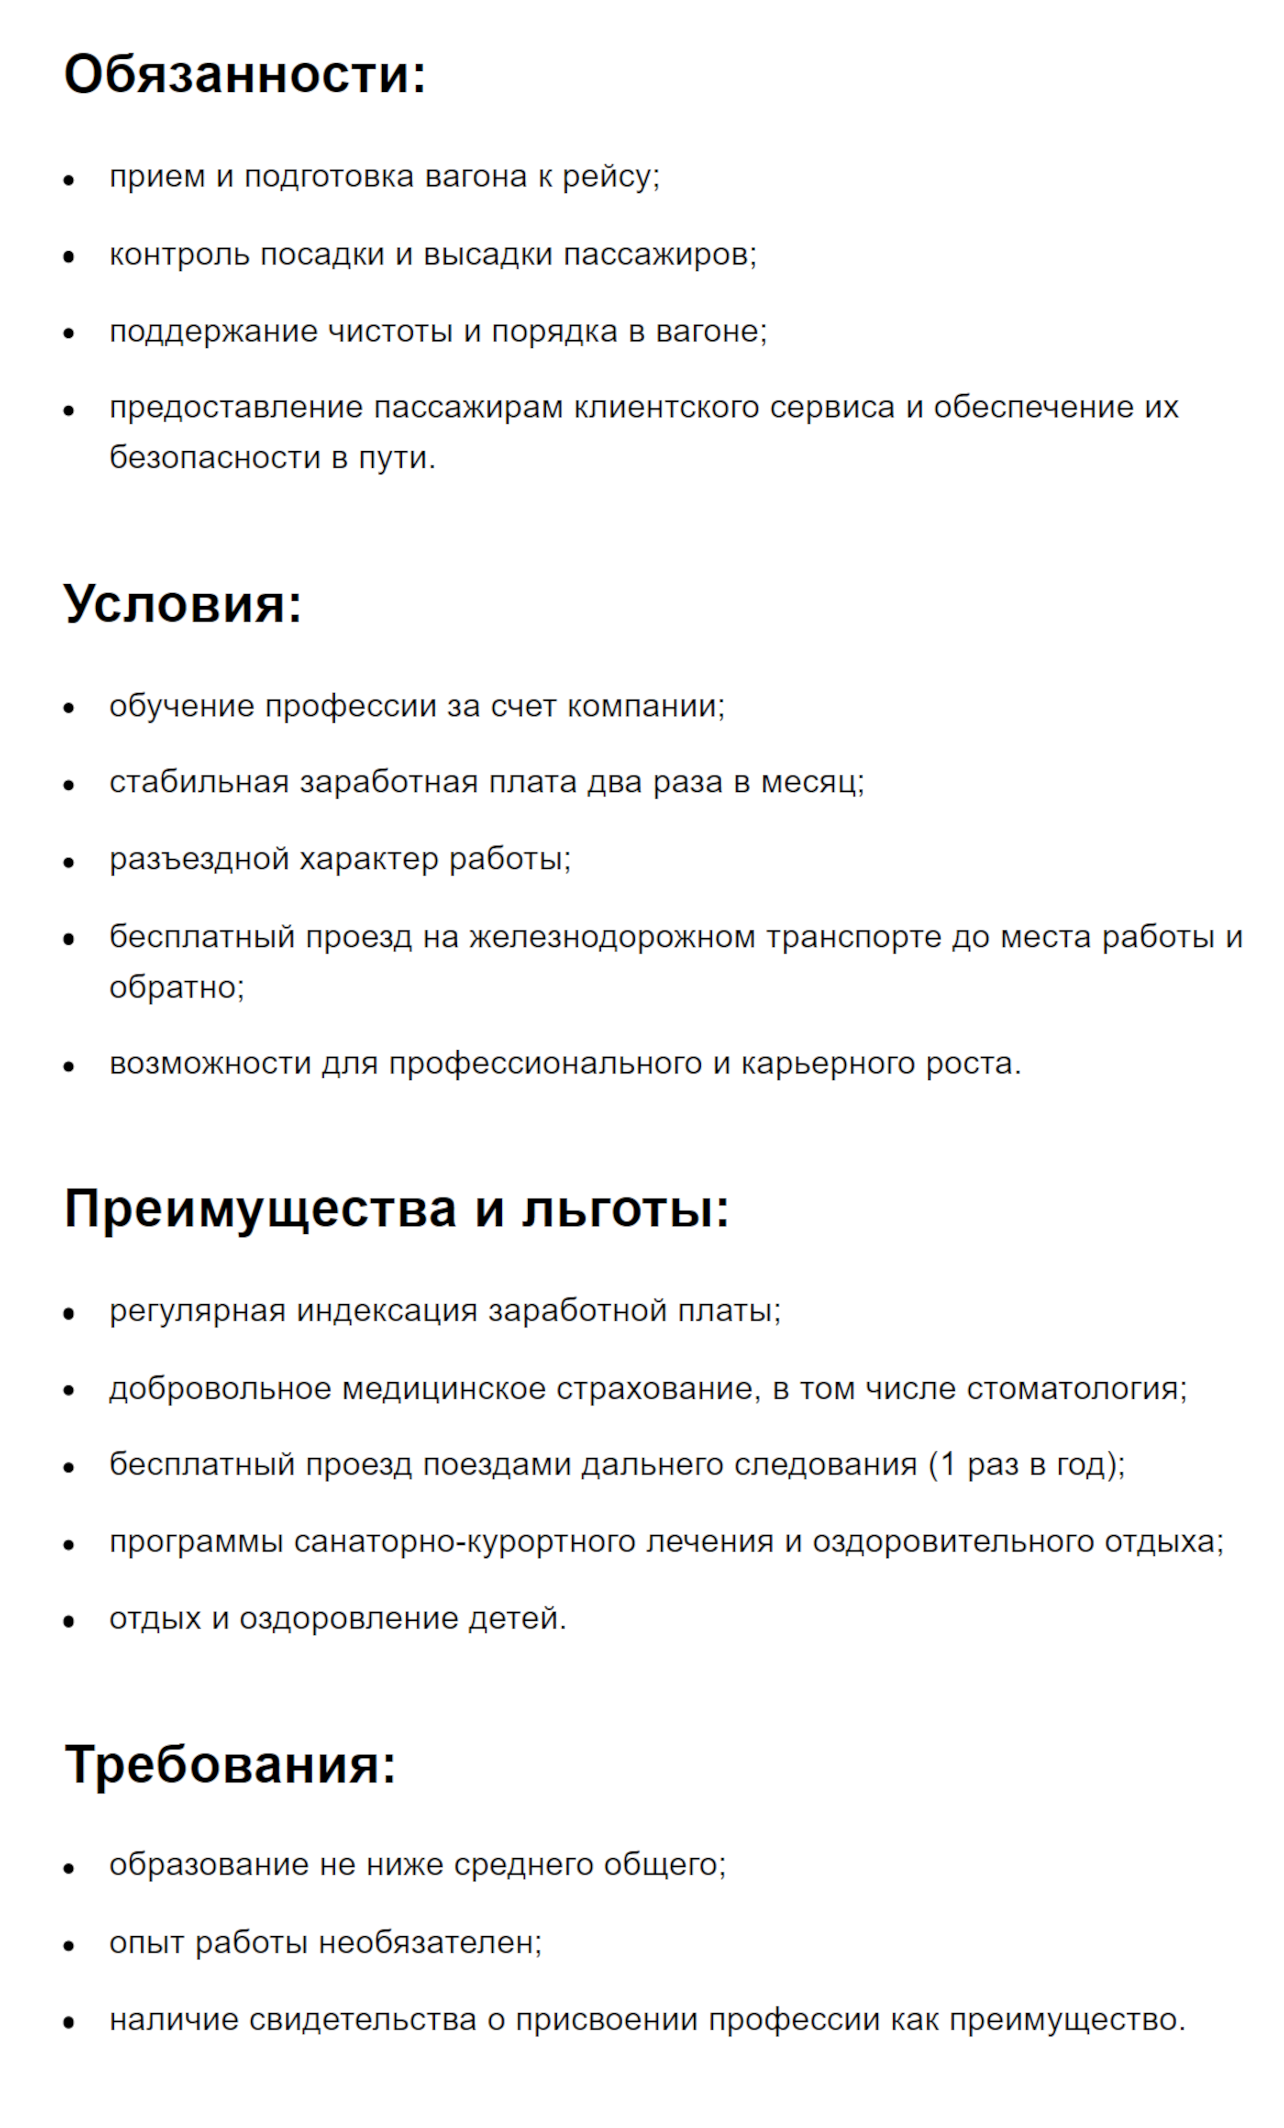 В ФПК предлагают зарплату от 50 до 65 тысяч рублей в месяц, обещают бесплатное обучение, проезд на поездах и ДМС со стоматологией. Источник: hh.ru